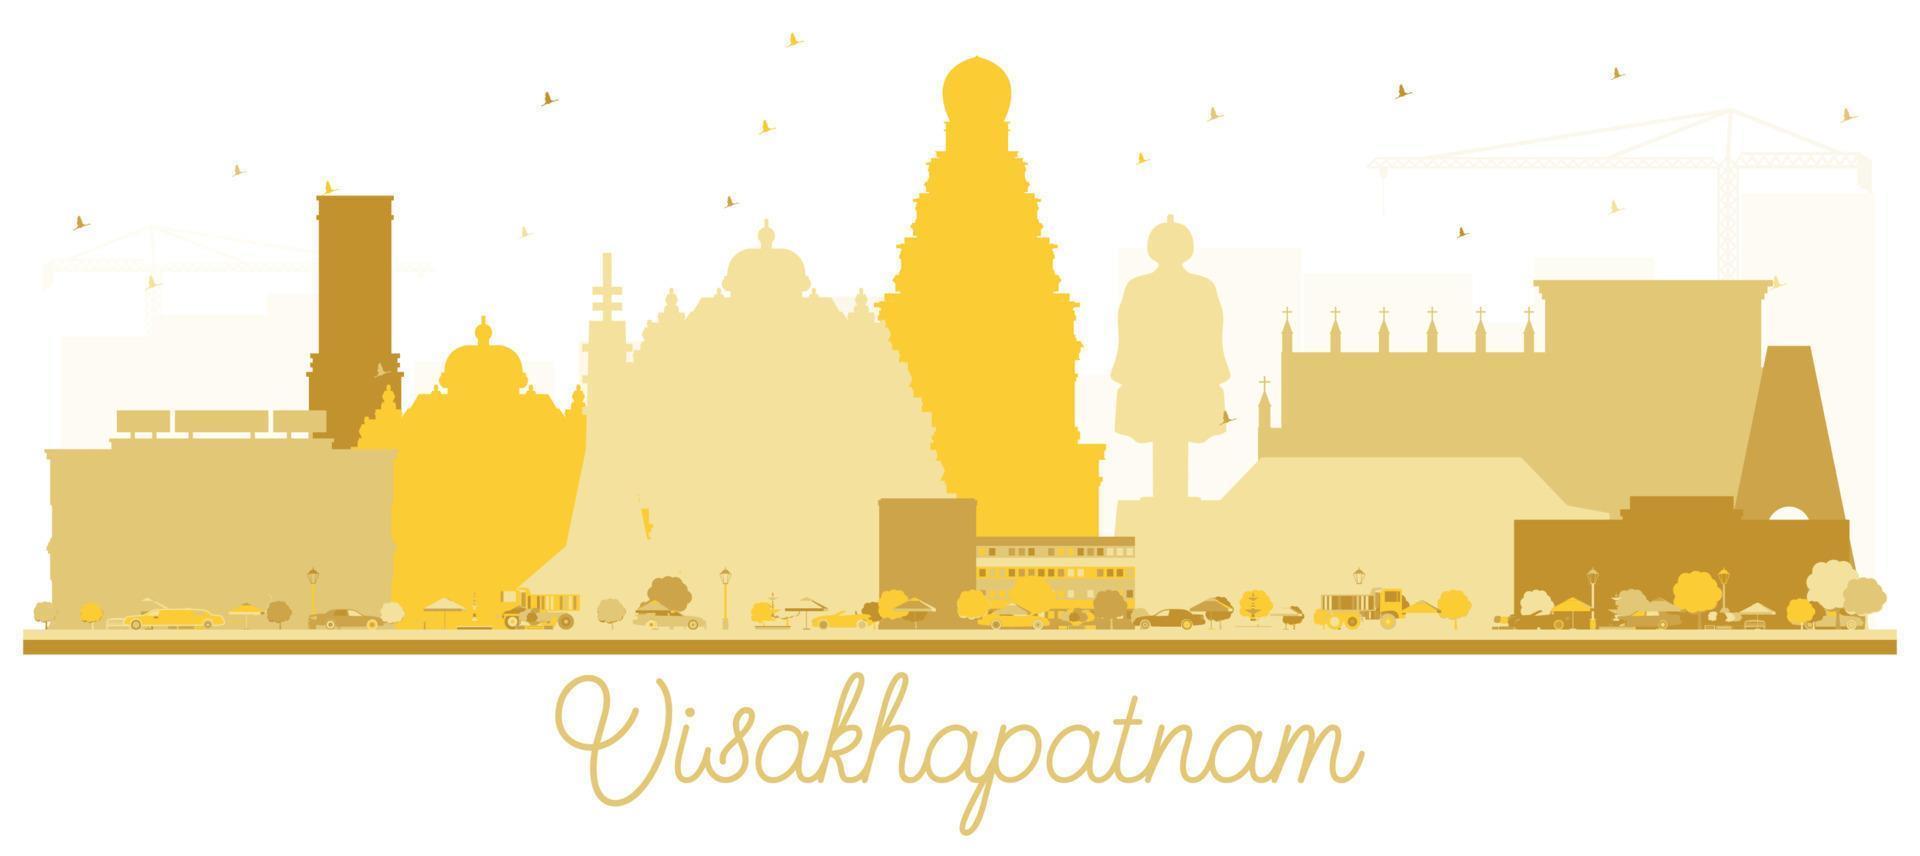 Visakhapatnam India City skyline golden silhouette. vector